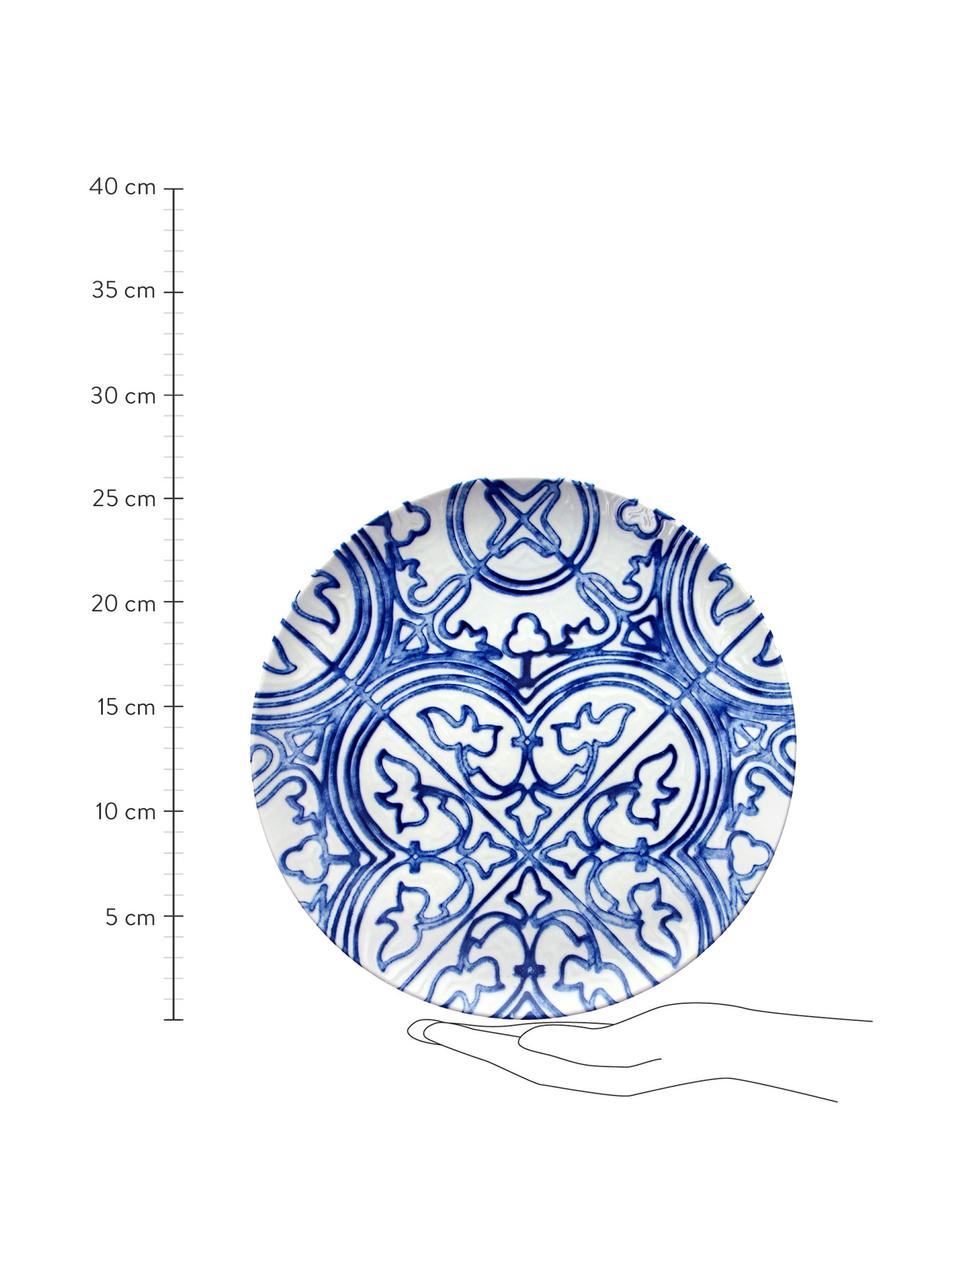 Speiseteller Maiolica aus Porzellan in Weiß/Blau, 2 Stück, Porzellan, Blau, Weiß, gemustert, Ø 26 cm